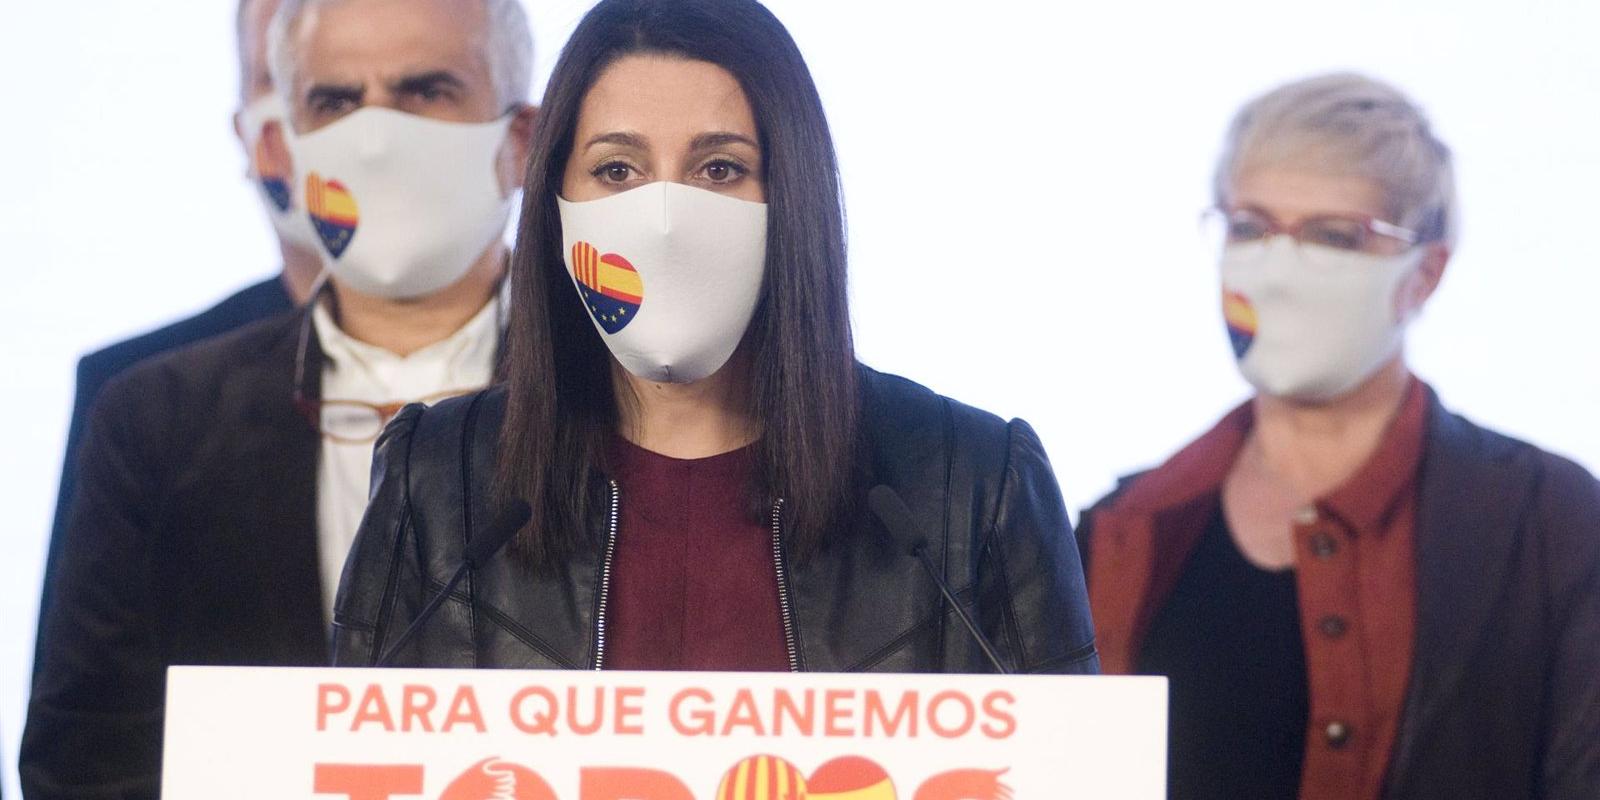 Arrimadas descarta dimitir o destituir a otros dirigentes de Ciudadanos tras la debacle electoral en Cataluña